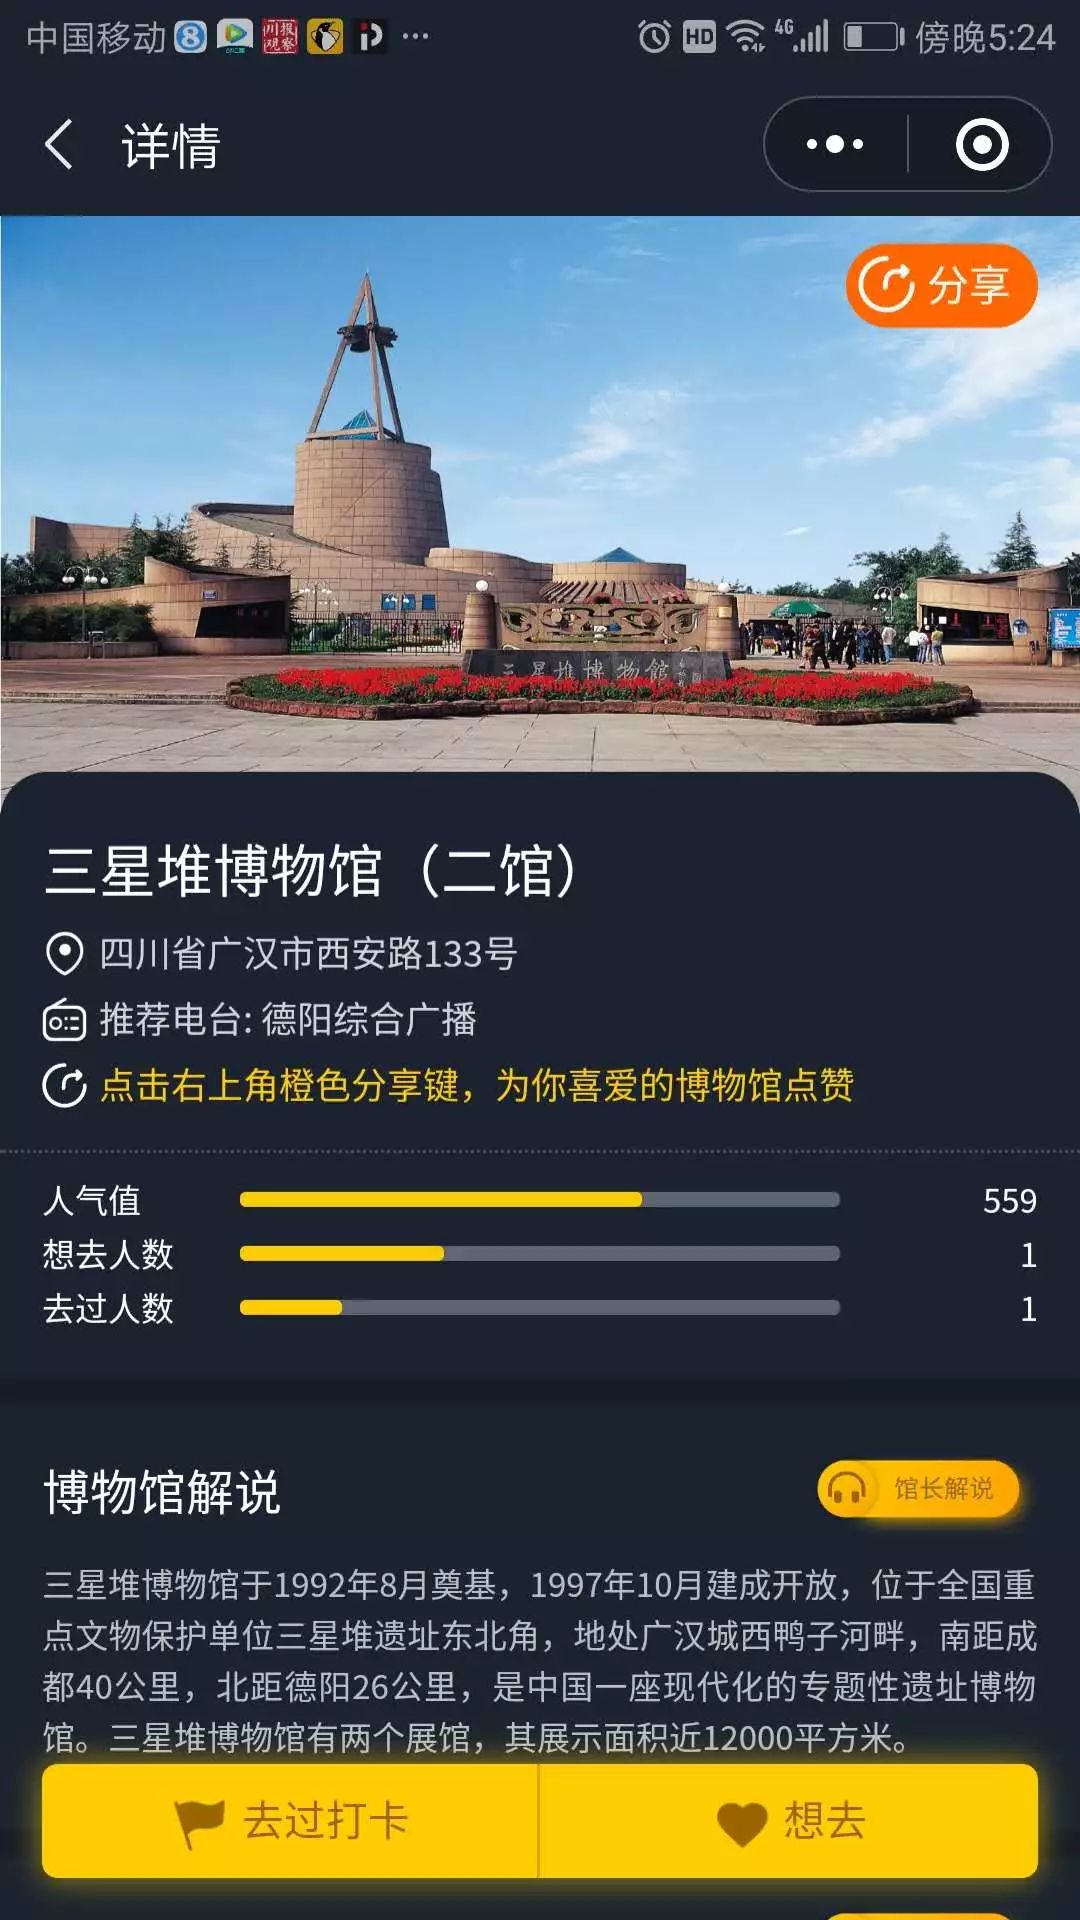 广东纪念馆打卡二维码图片